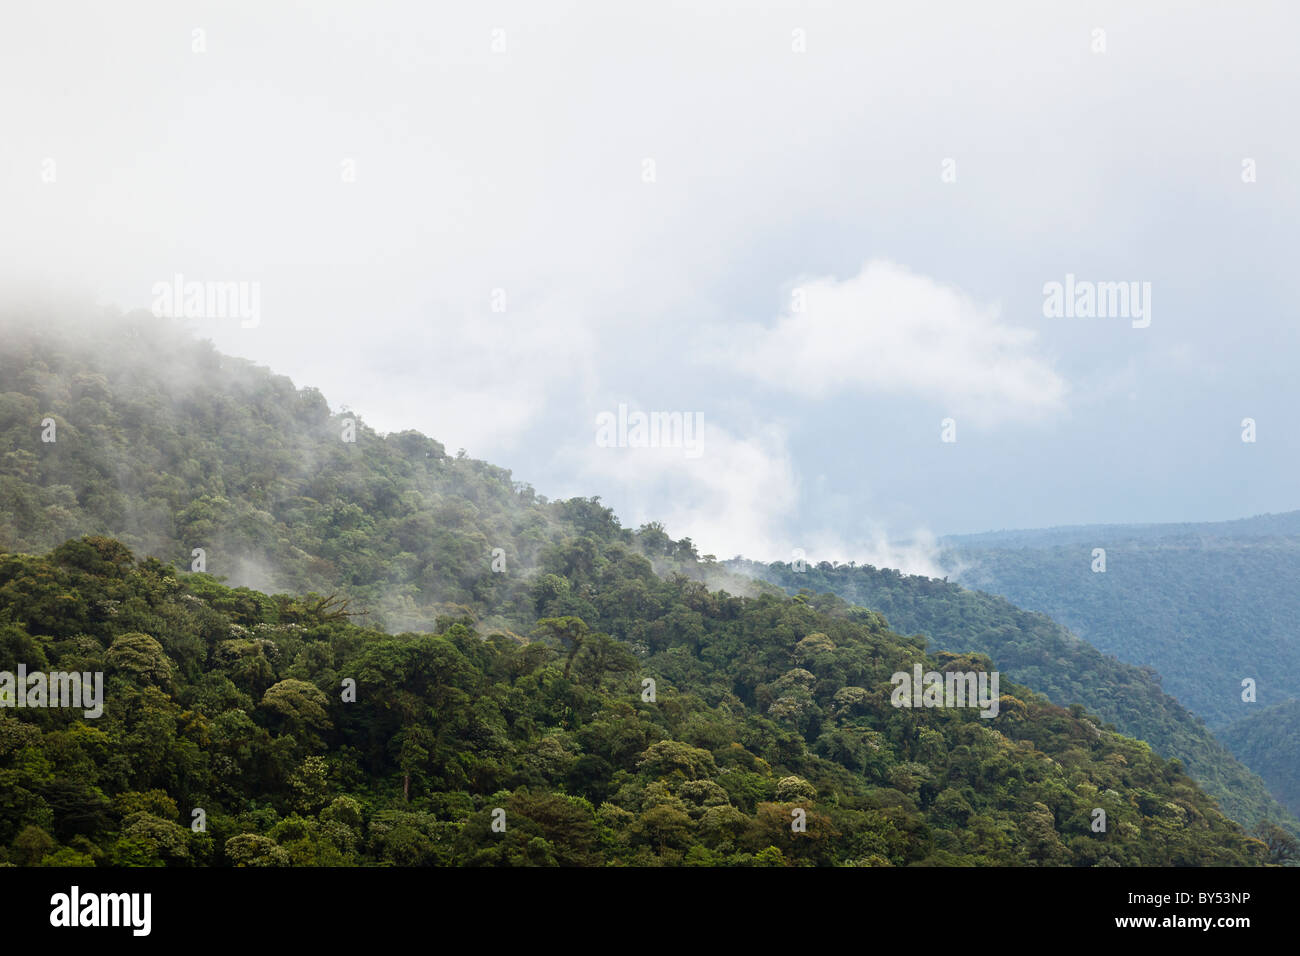 La selva tropical y bosque nublado abarcan el Parque Nacional Braulio Carrillo en la provincia de Heredia, Costa Rica. Foto de stock